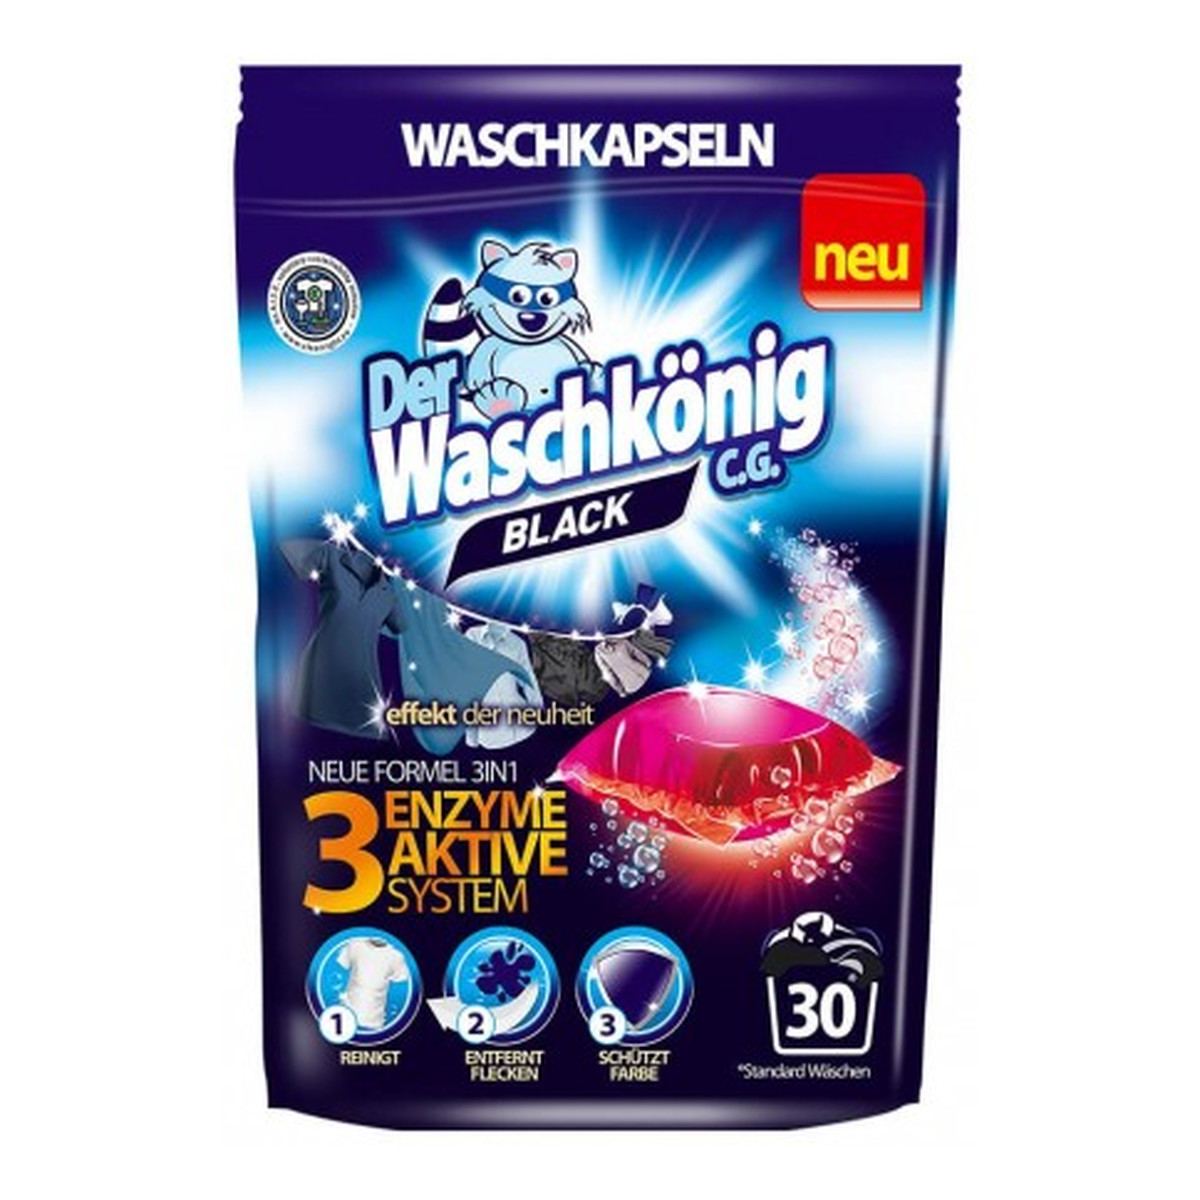 Der Waschkönig C.G. Mega Caps 3w1, kapsułki do prania Black 30 szt.